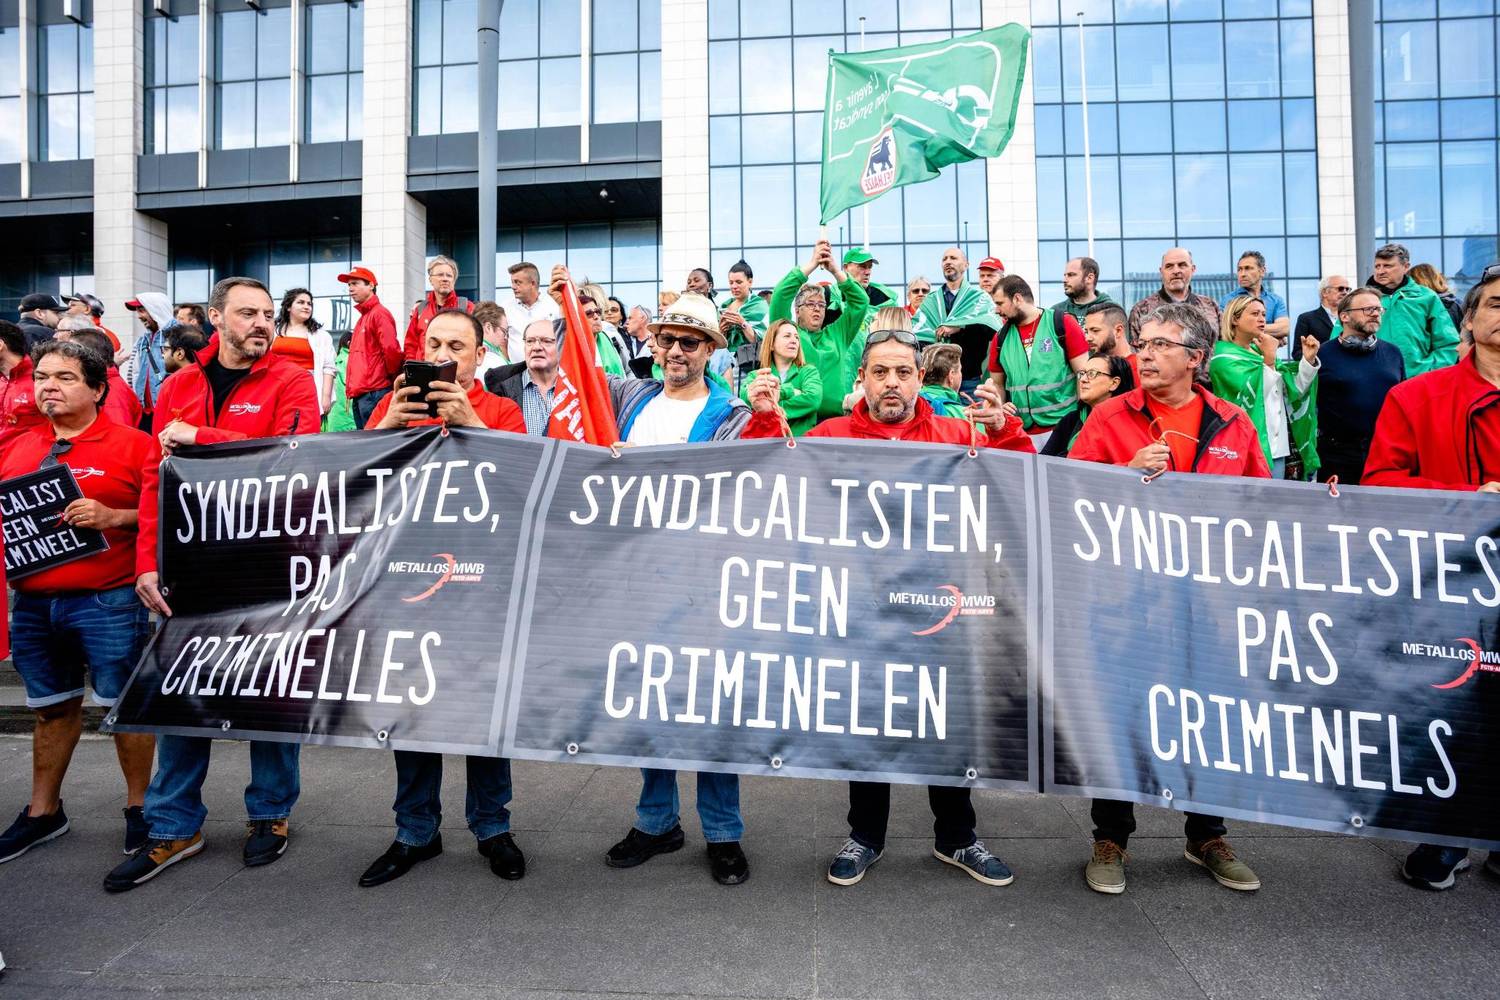 Vakbondsbetoging in Brussel. Betogers houden aan banner vast met daarop: "Syndicalisten, geen criminelen".